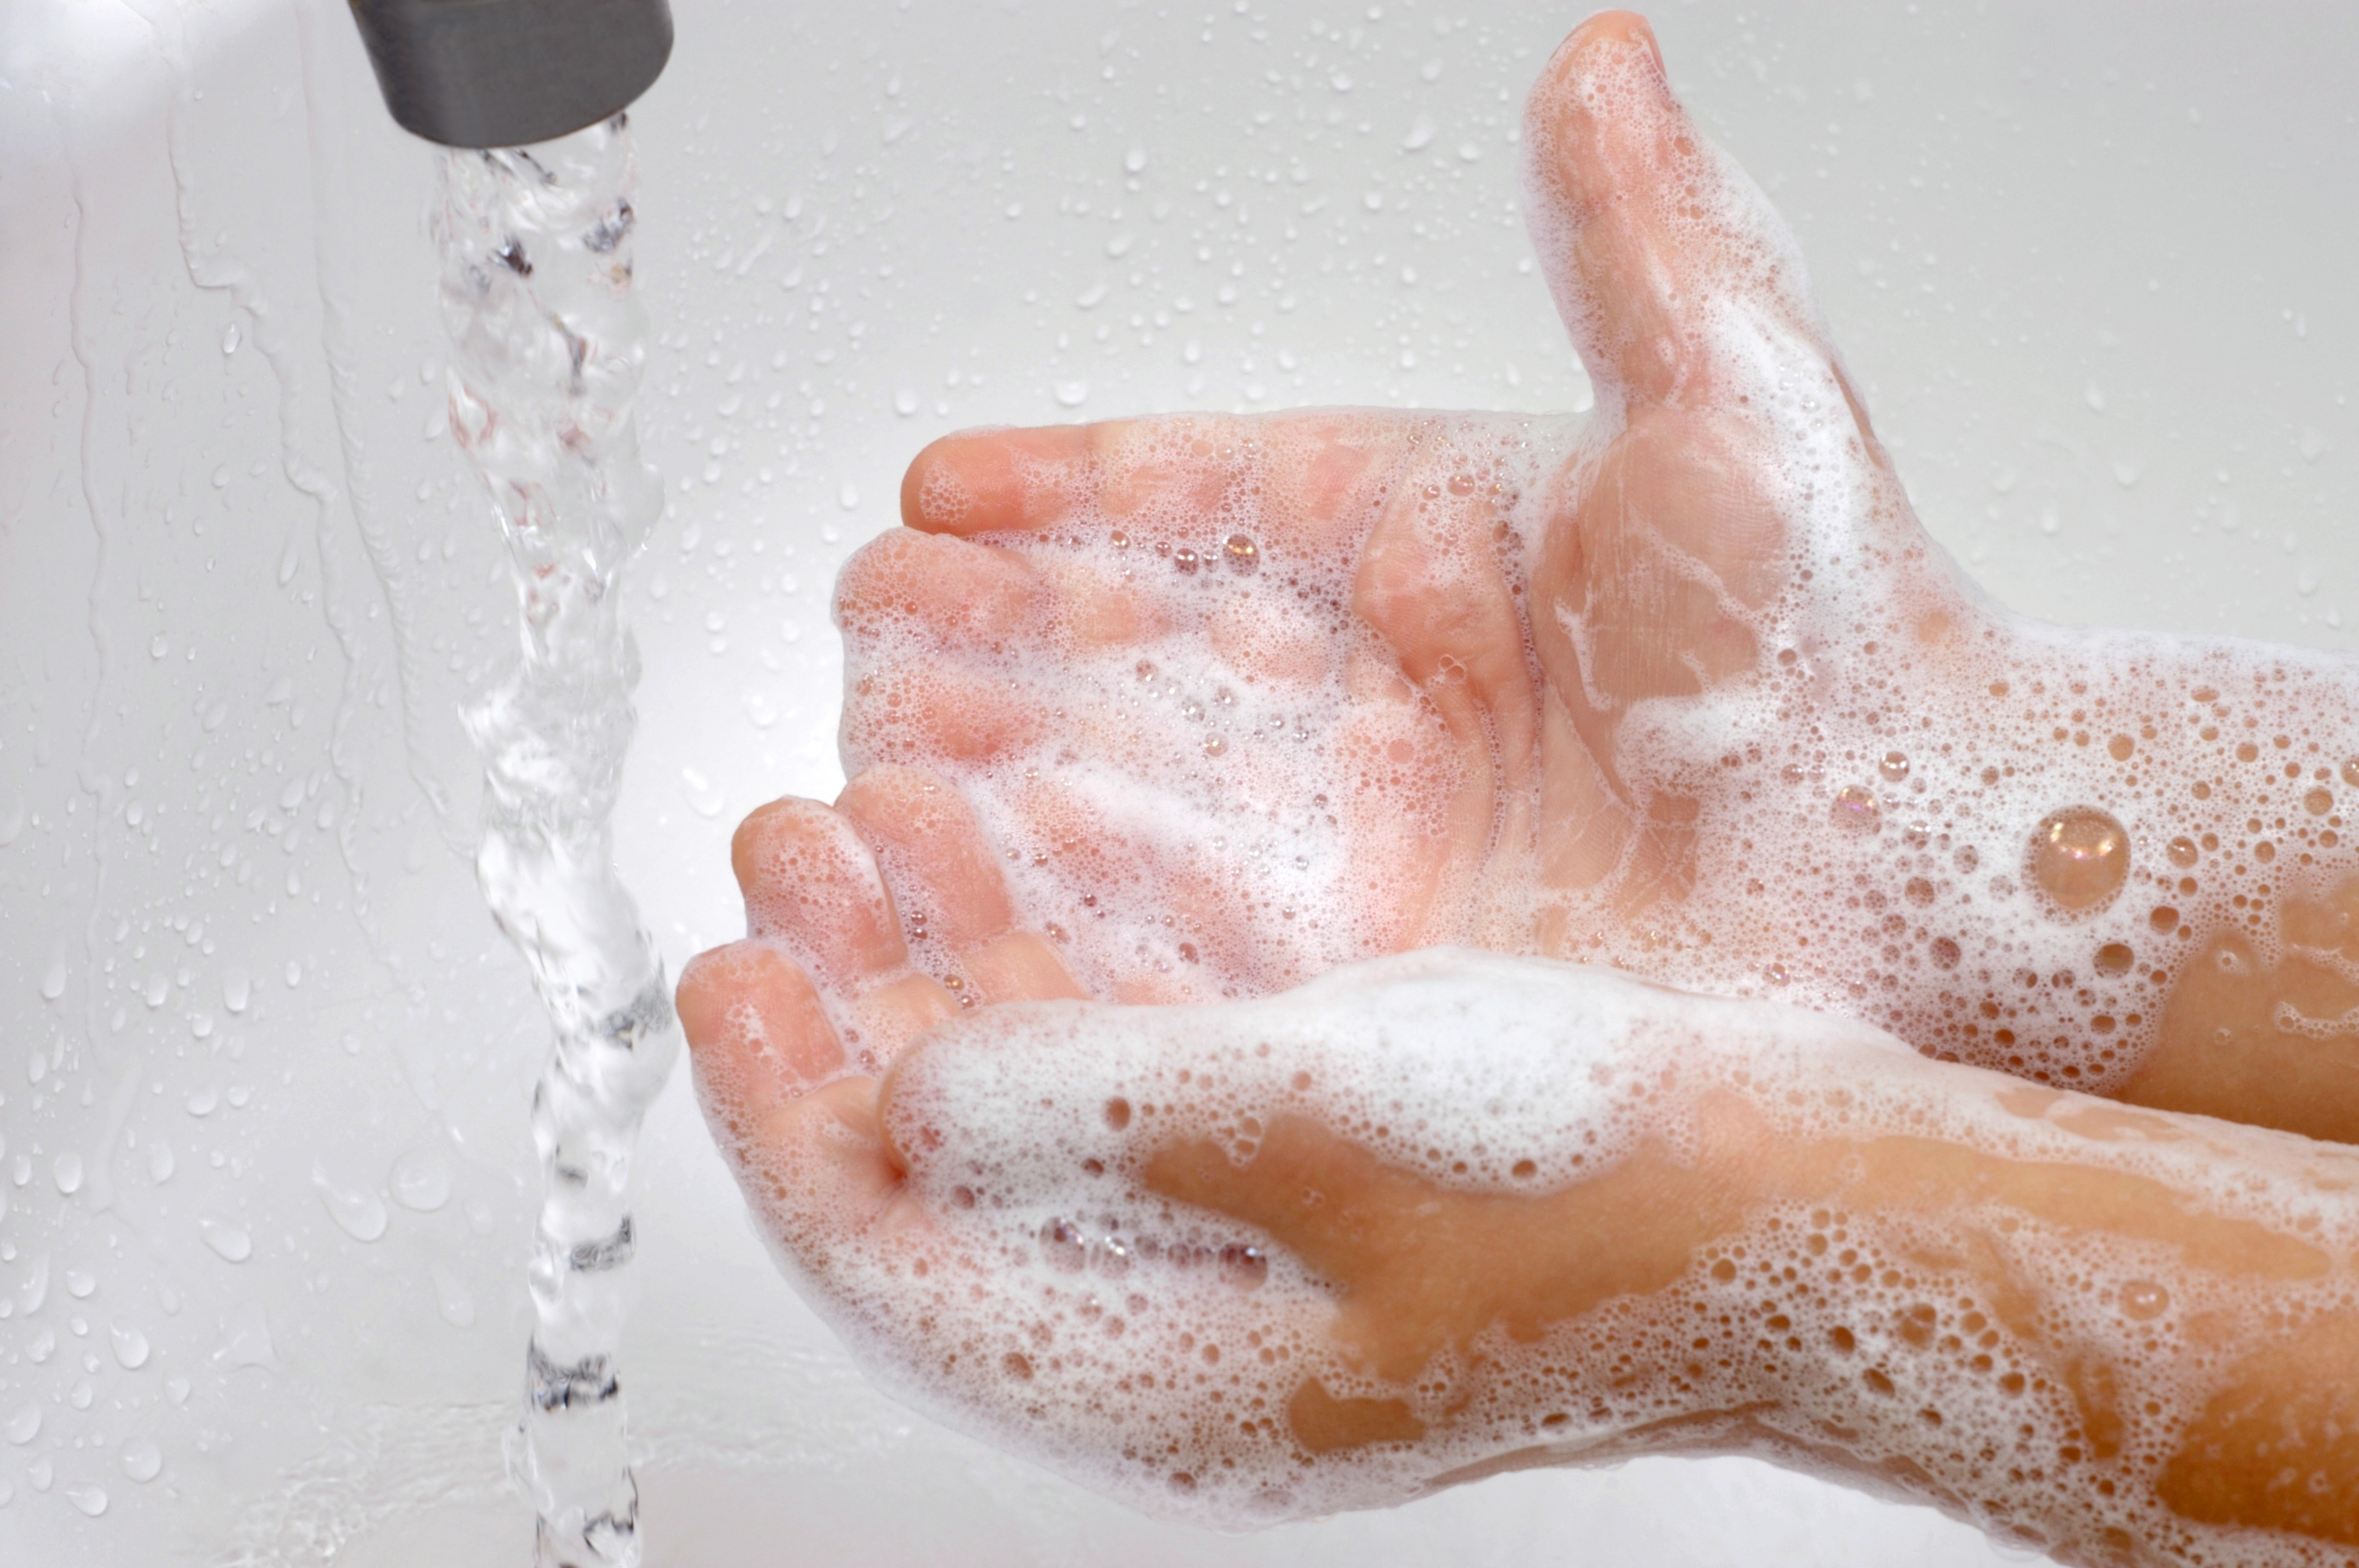 Un buen consejo de salud: lavarse las manos